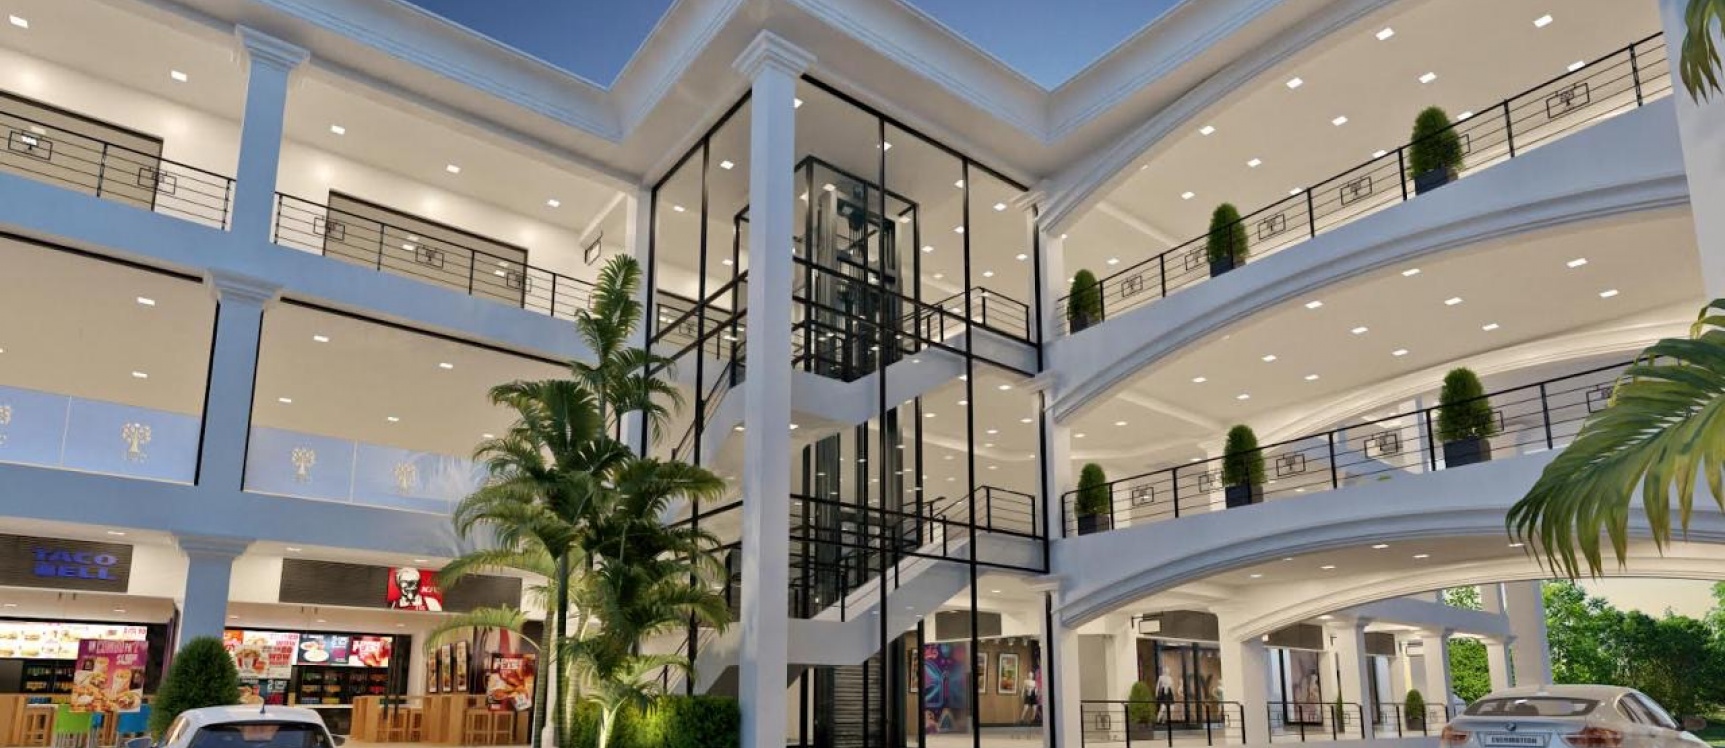 GeoBienes - Local Comercial en alquiler de 92m2 - Plusvalia Guayaquil Casas de venta y alquiler Inmobiliaria Ecuador